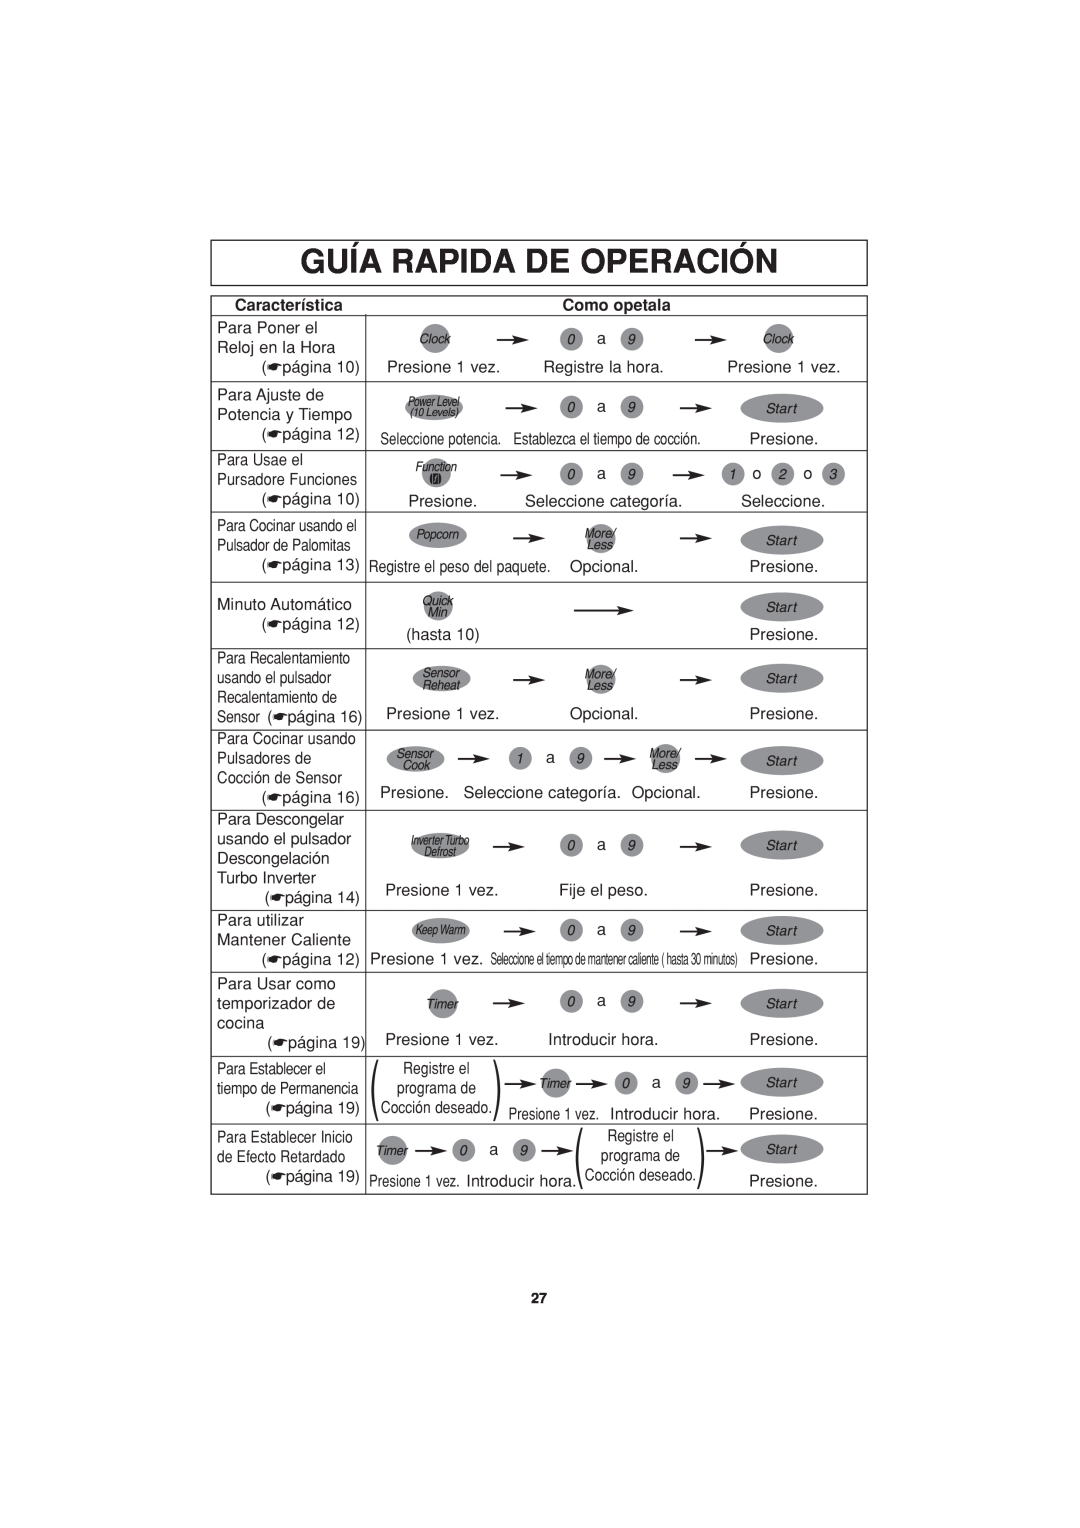 Panasonic NN-T694 operating instructions Guía Rapida De Operación, Característica, Como opetala 